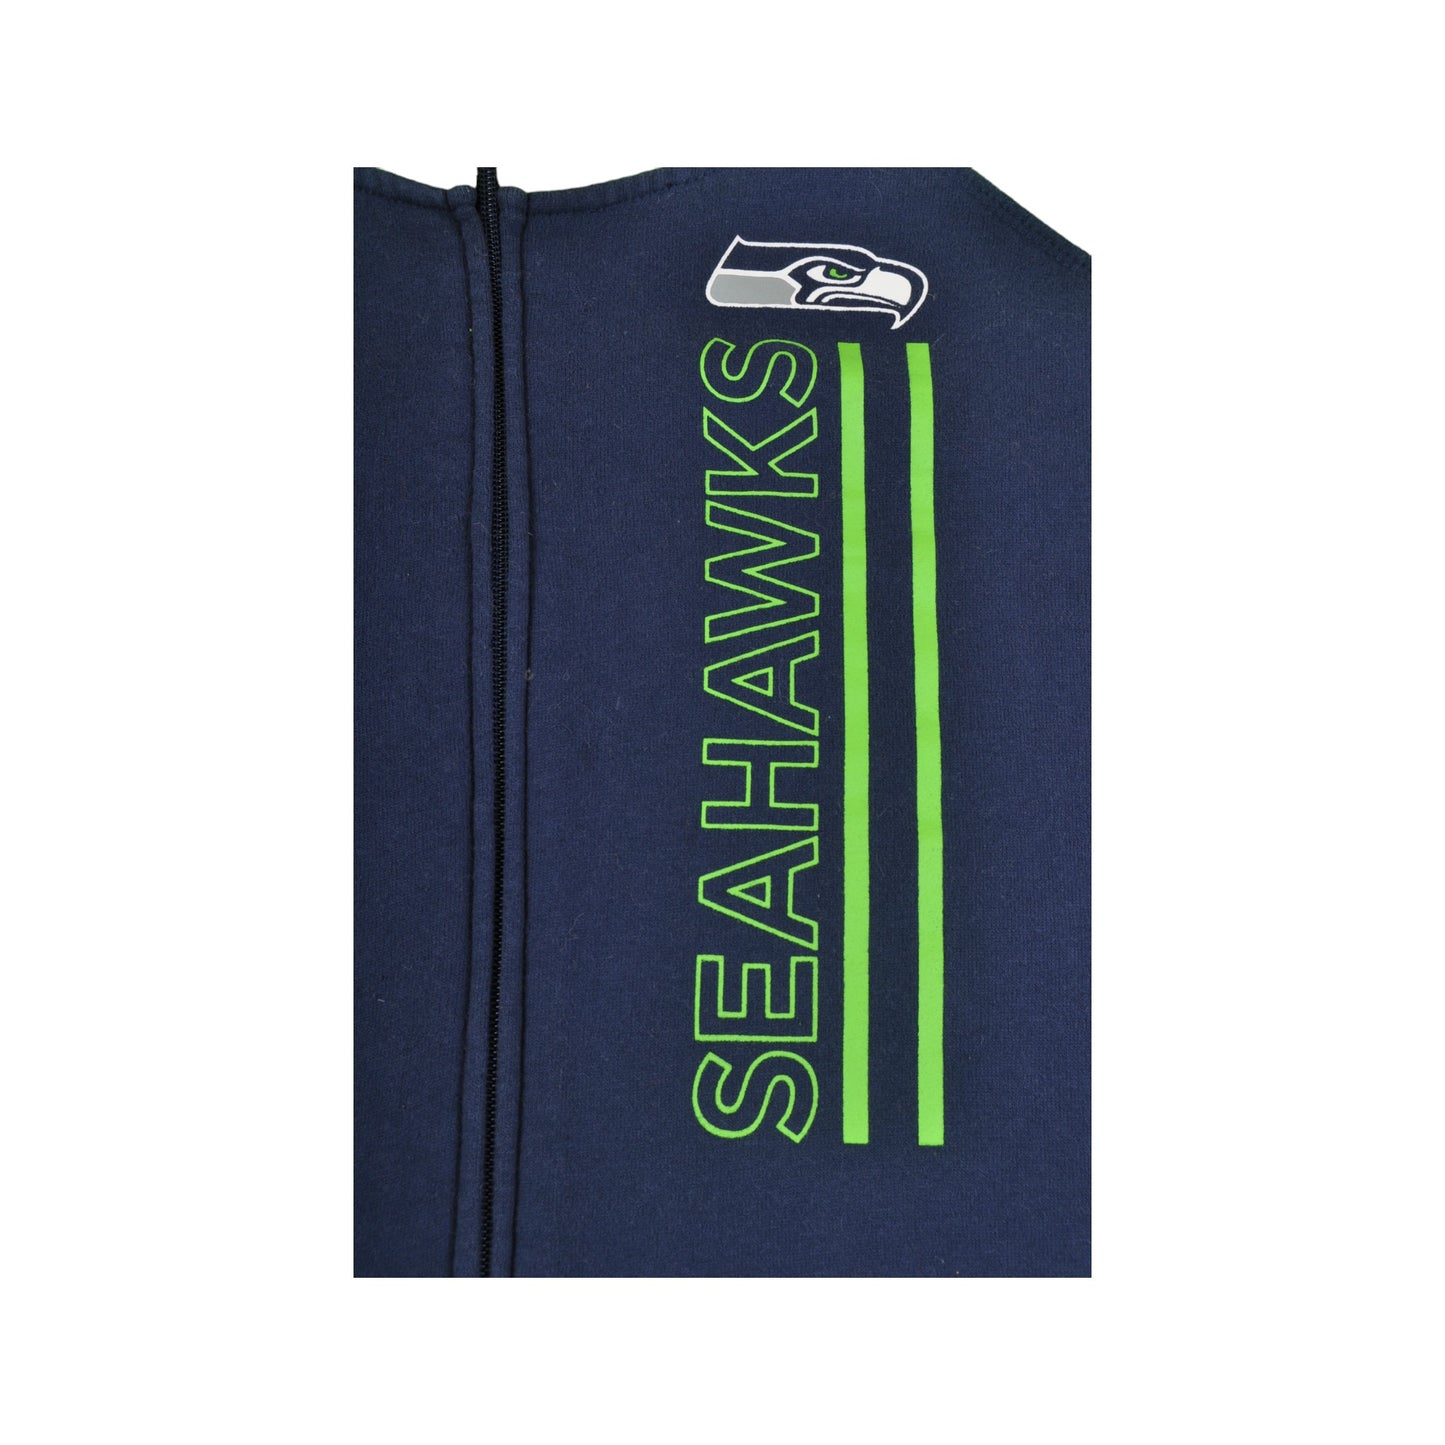 Vintage NFL Seattle Seahawks American Football Team Hoodie Sweatshirt Navy/Green Ladies XL